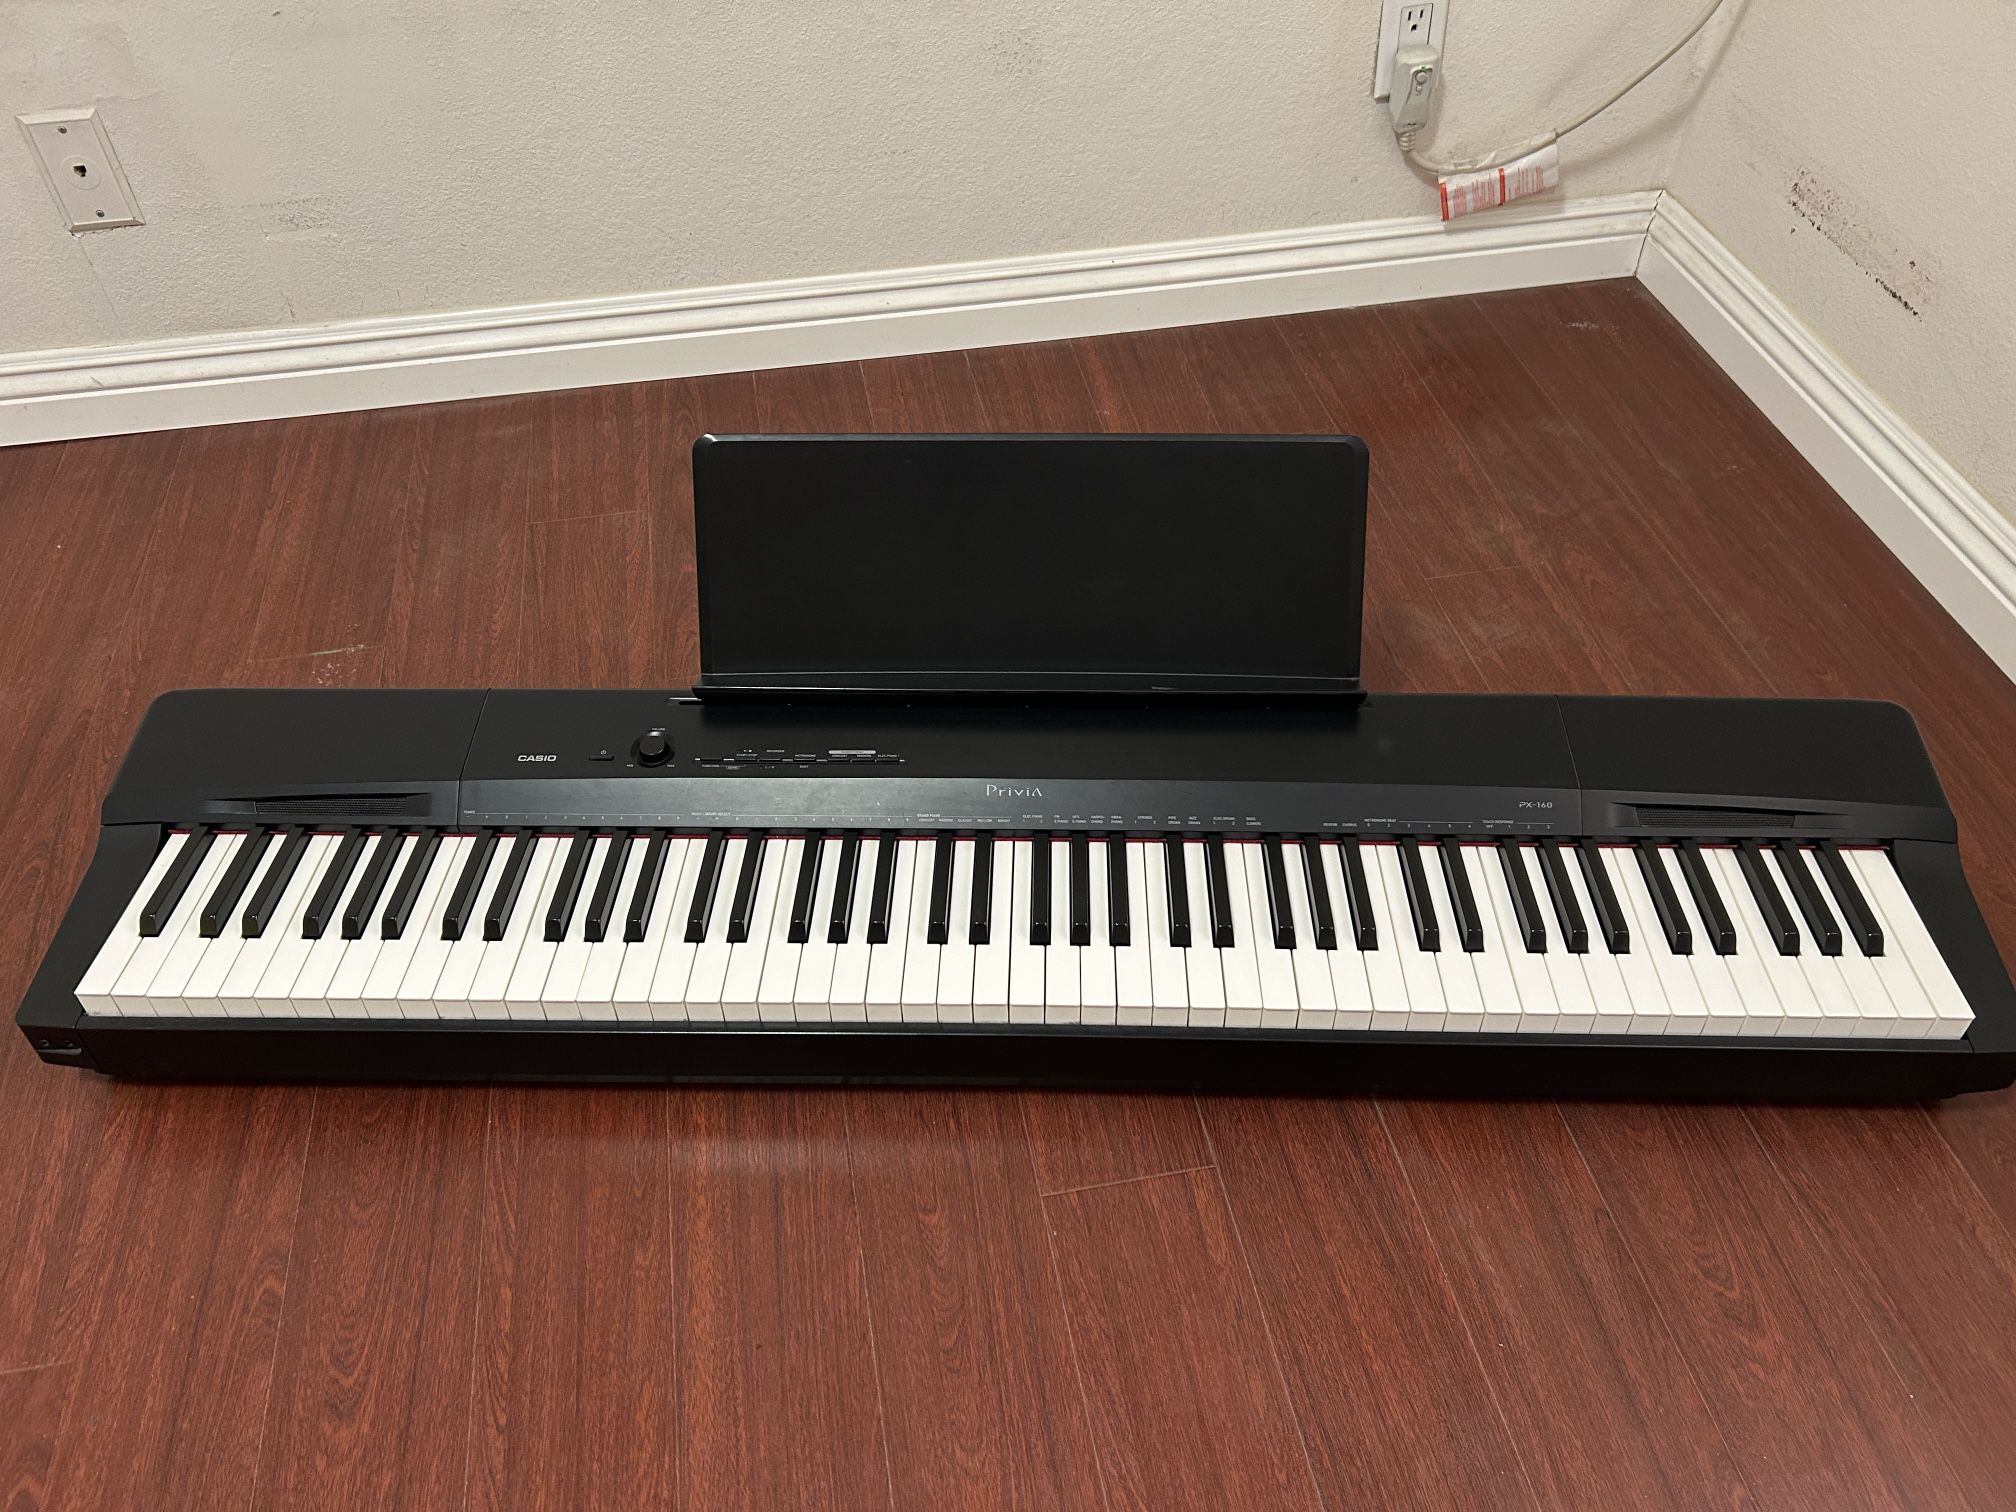 Digital Piano - Casio Privia PX-160